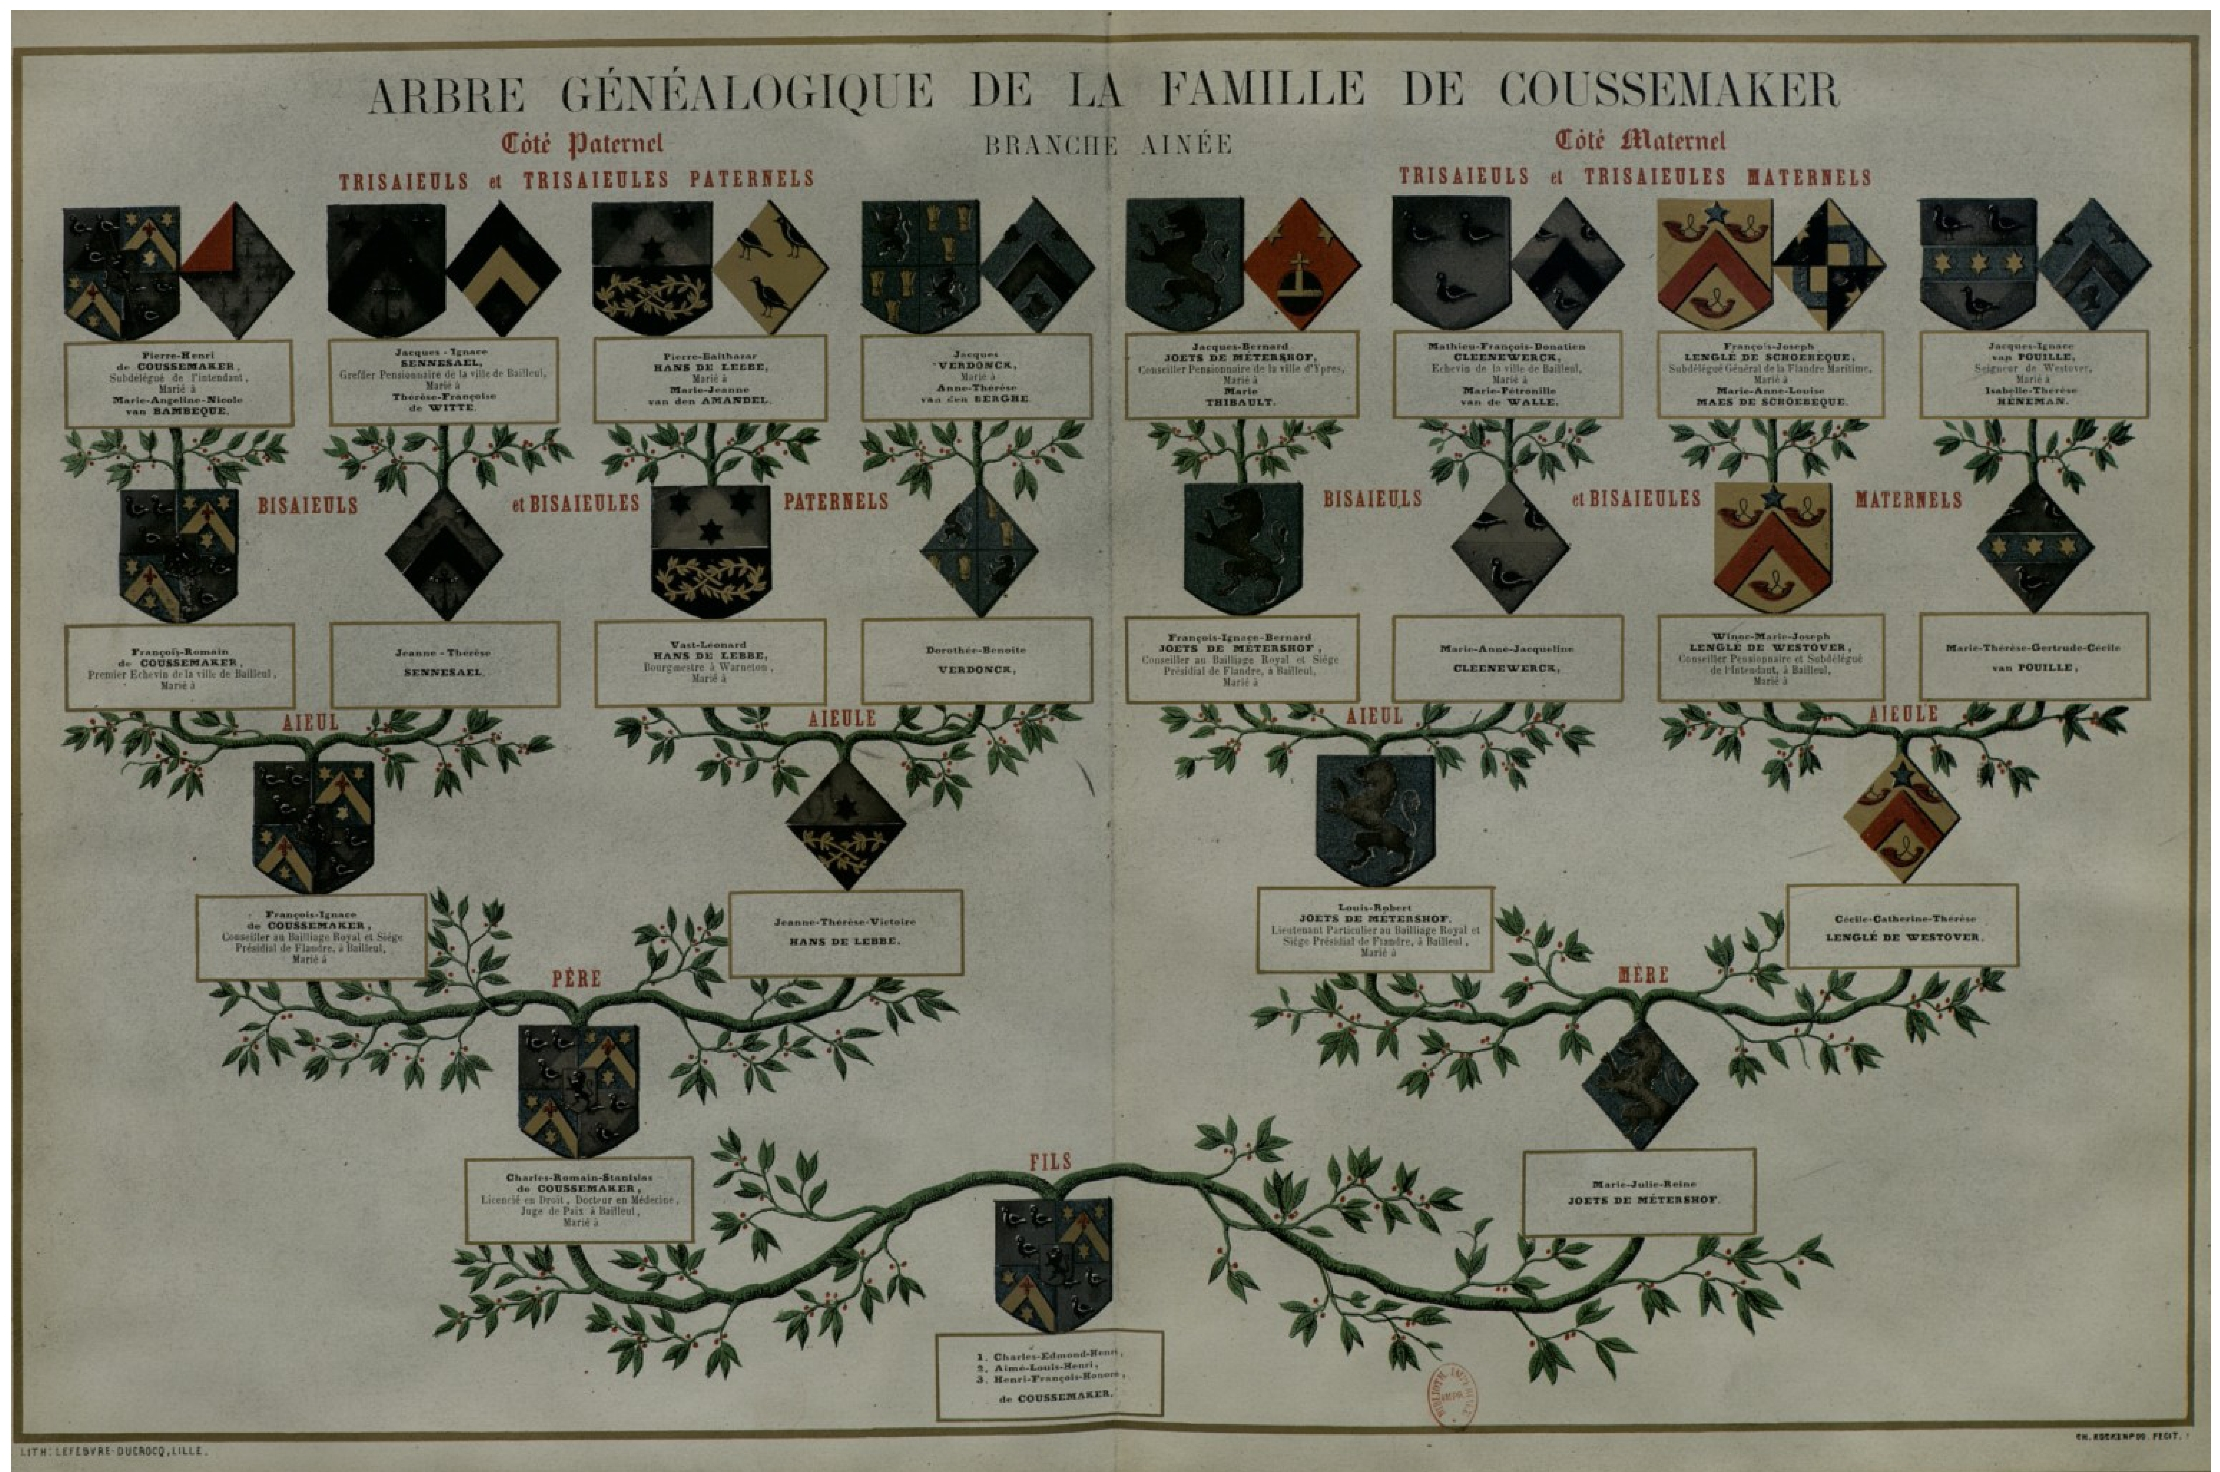 Genealogie de Coussemaker